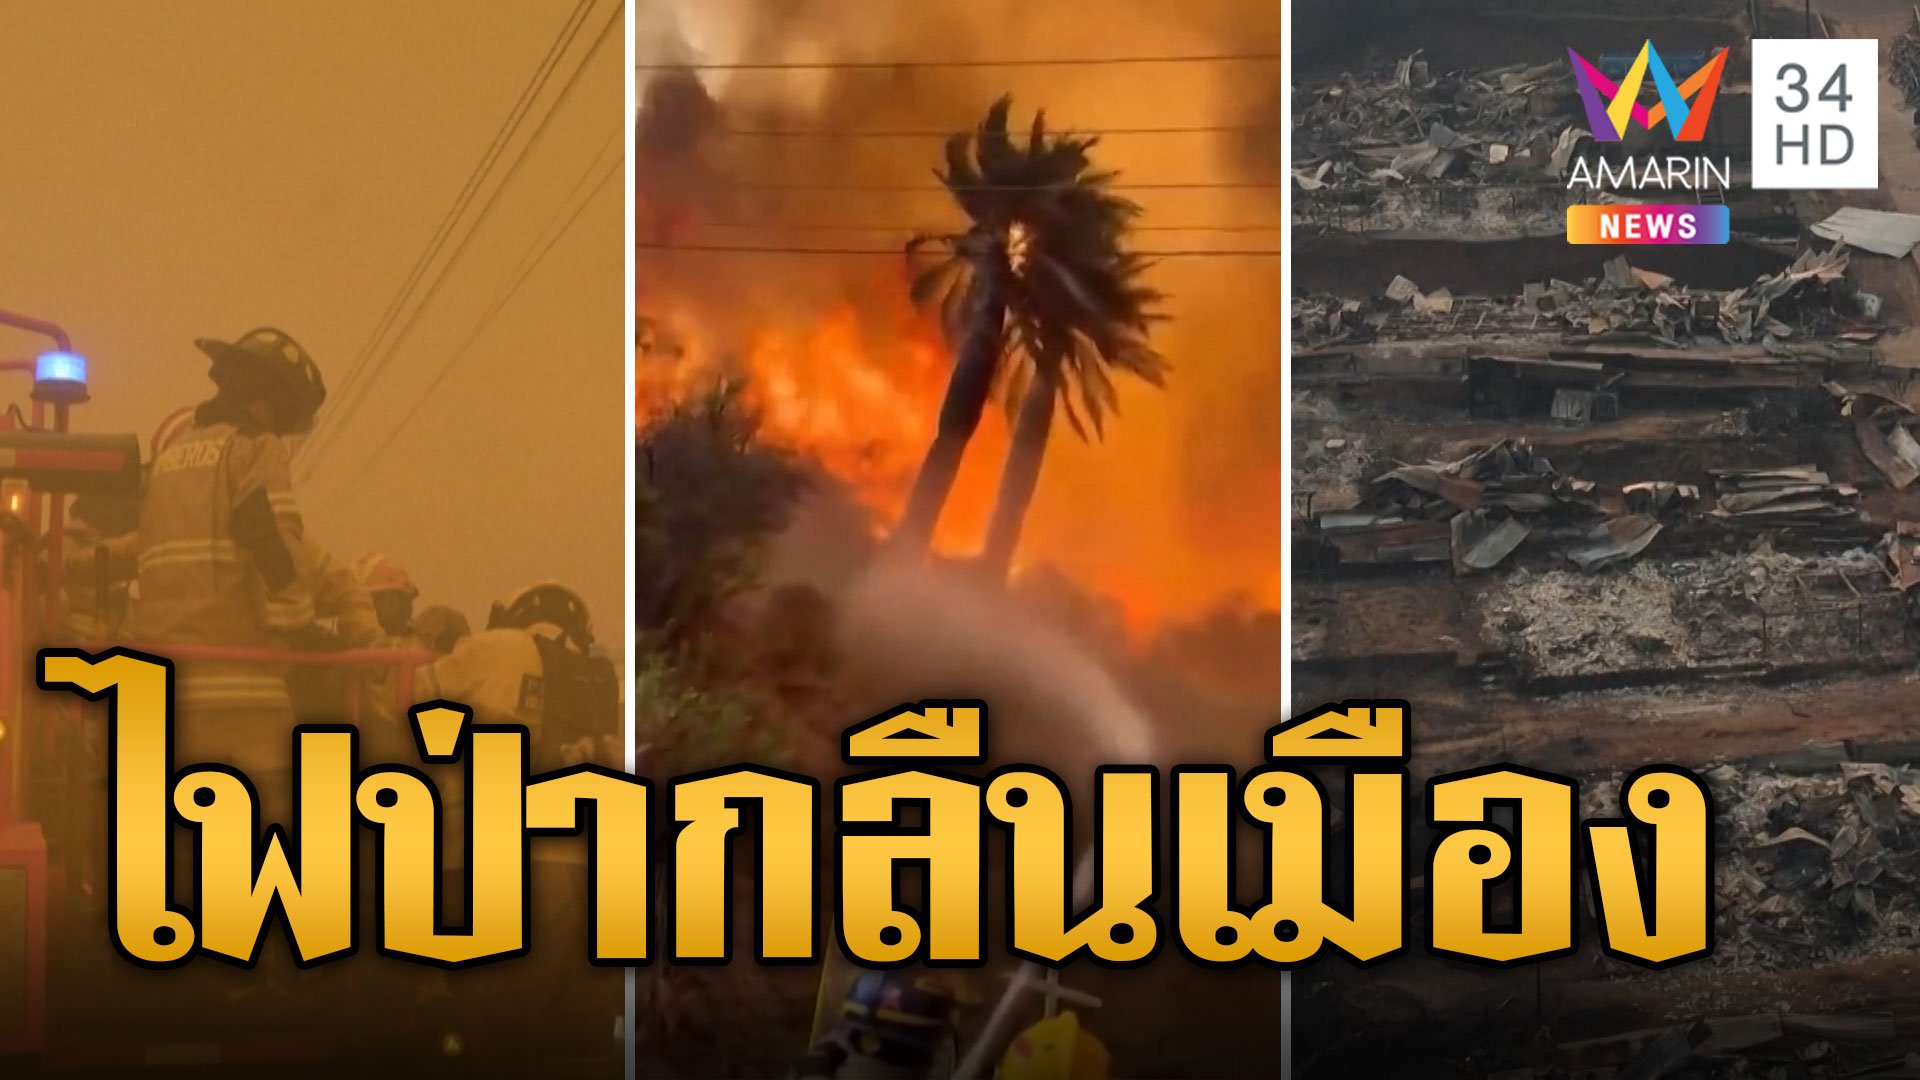 ไฟป่ารุกคืบ! ไหม้เมืองพังพินาศ ถูกกลืนในกองเพลิงดับเฉยด 100 ราย | ข่าวอรุณอมรินทร์ | 5 ก.พ. 67 | AMARIN TVHD34